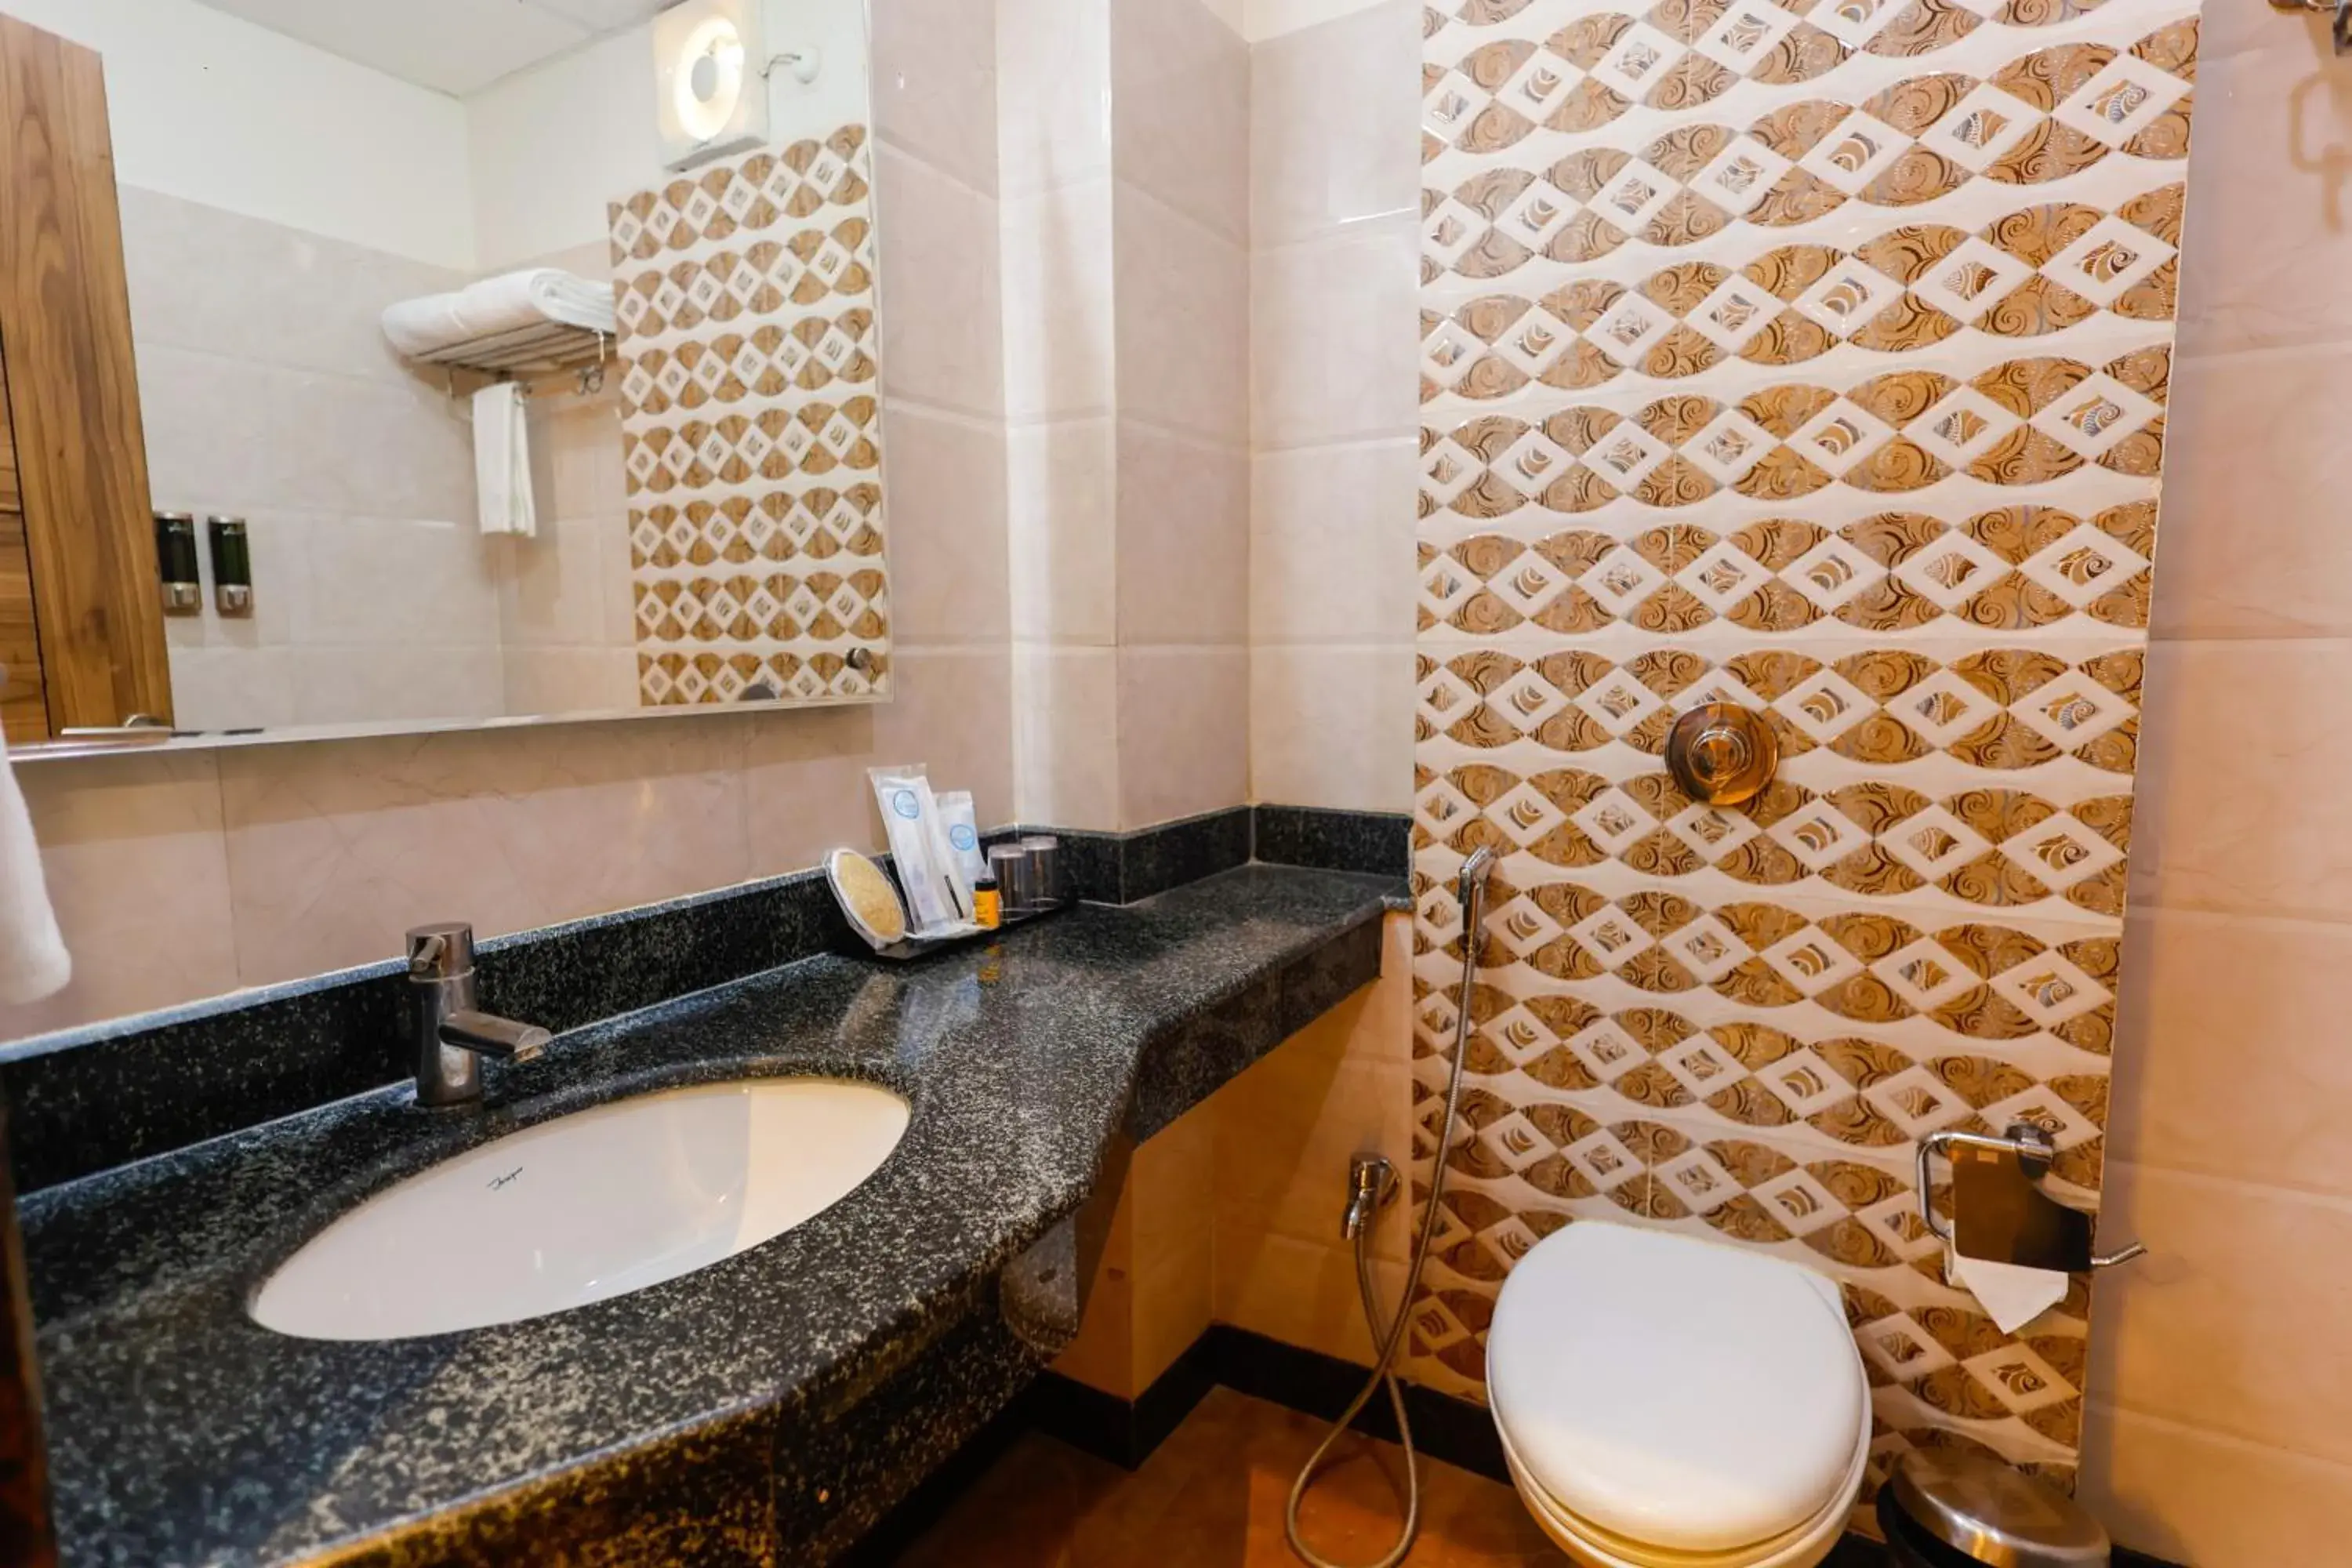 Bathroom in Hotel Dolphin International